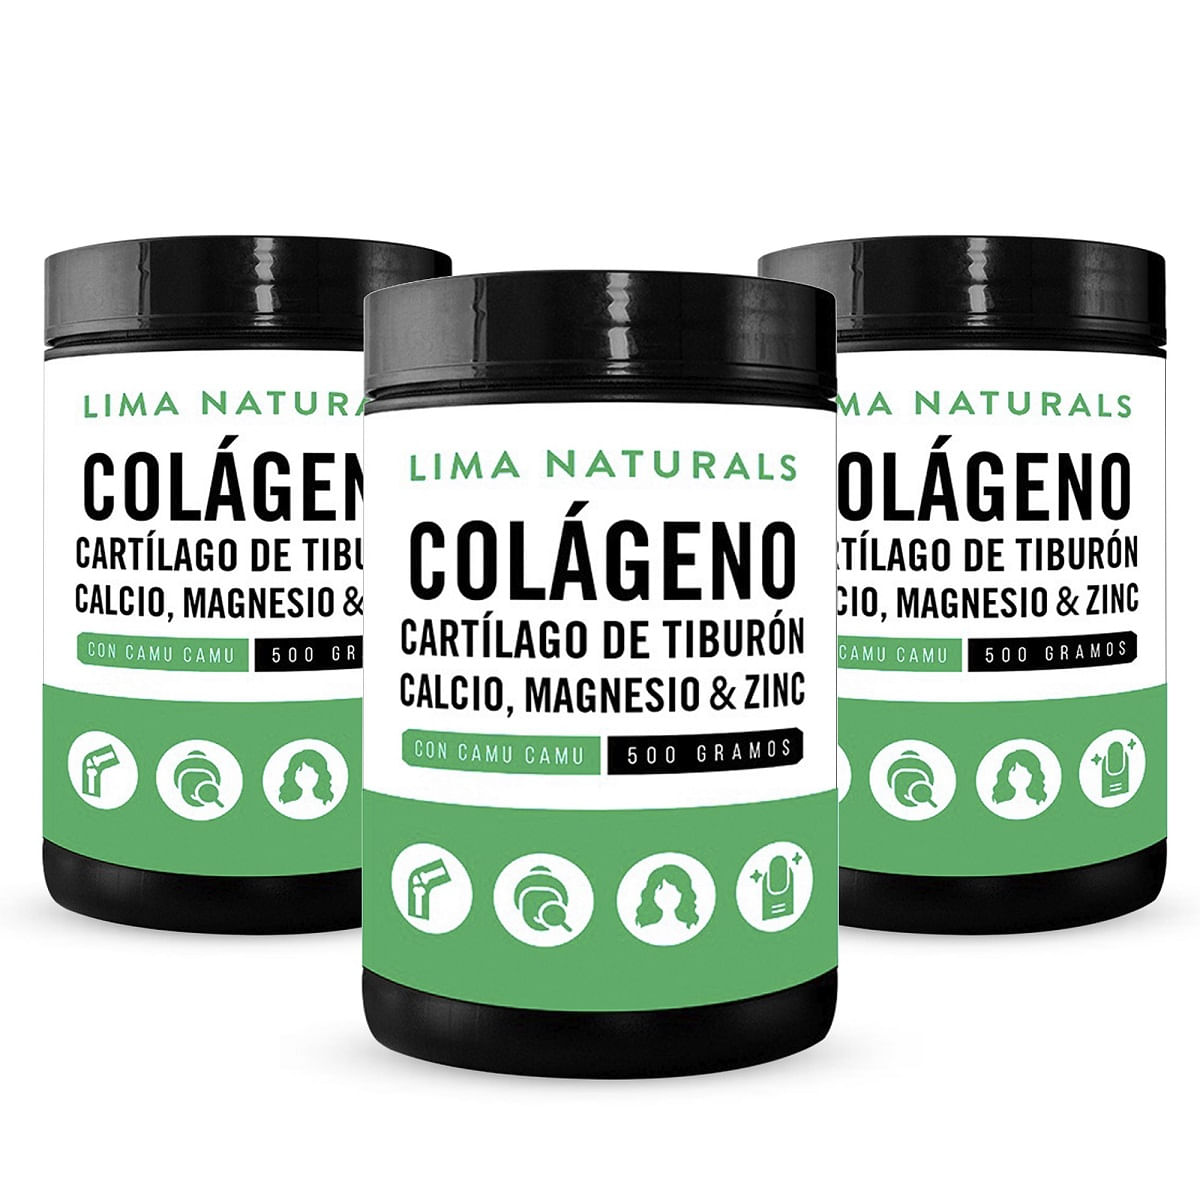 Colageno Hidrolizado, Cartilago de Tiburon, Calcio, Magnesio & Zinc Lima Naturals 500 g Pack x 3